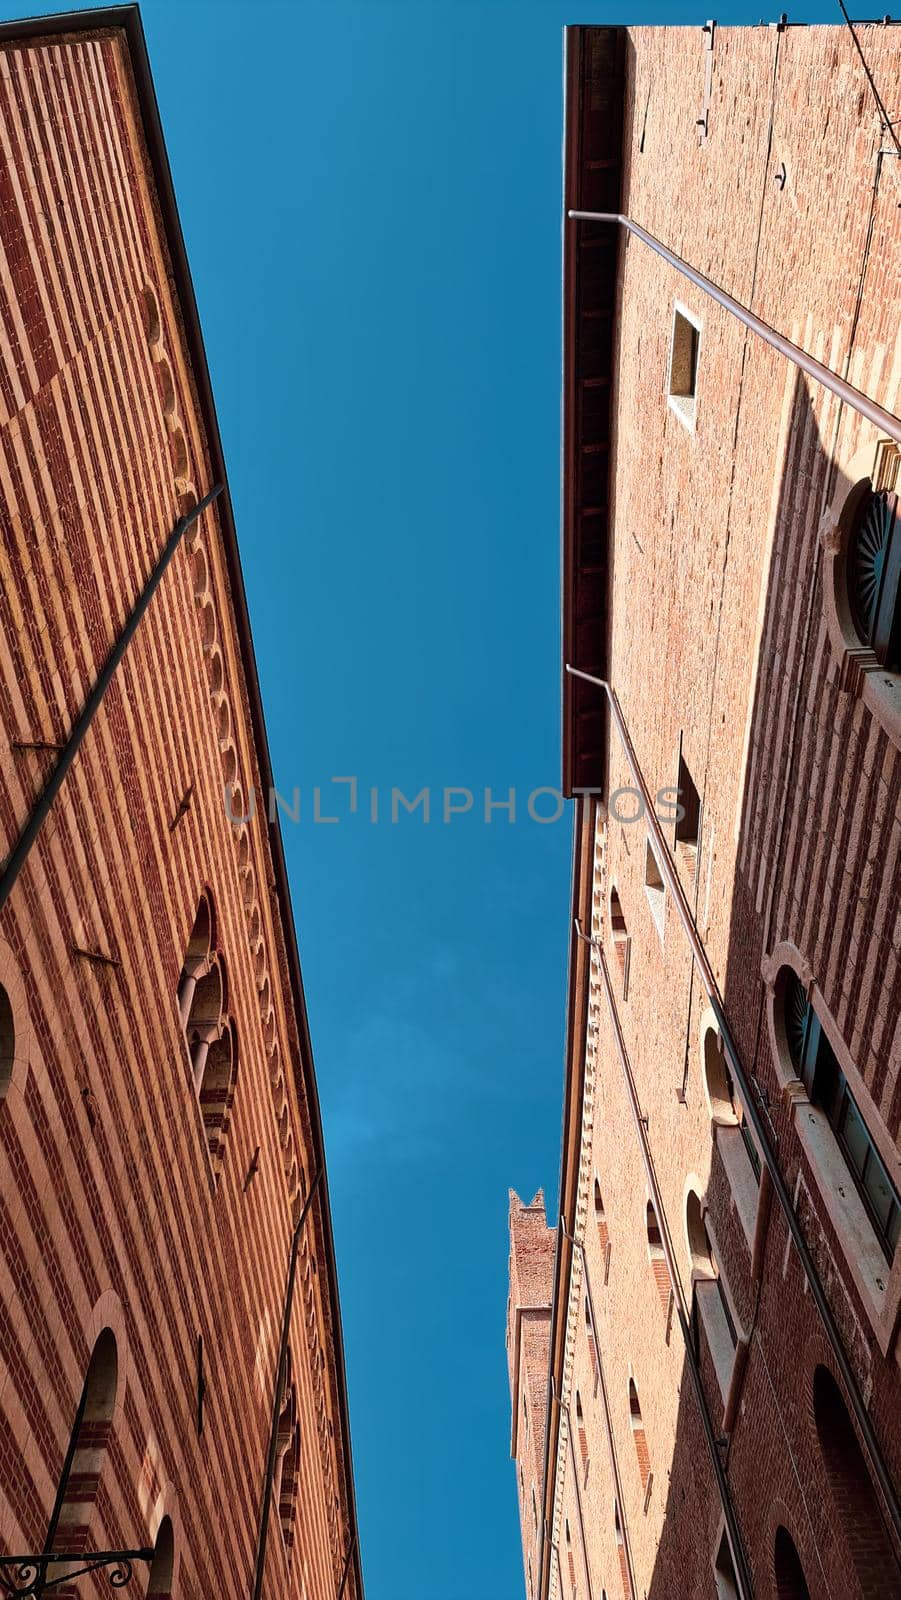 Verona, Italy - March 19, 2022: Aerial view of Verona historical city centre, Ponte Pietra bridge across Adige river, Verona Cathedral, Duomo di Verona, red tiled roofs, Veneto Region, Italy.